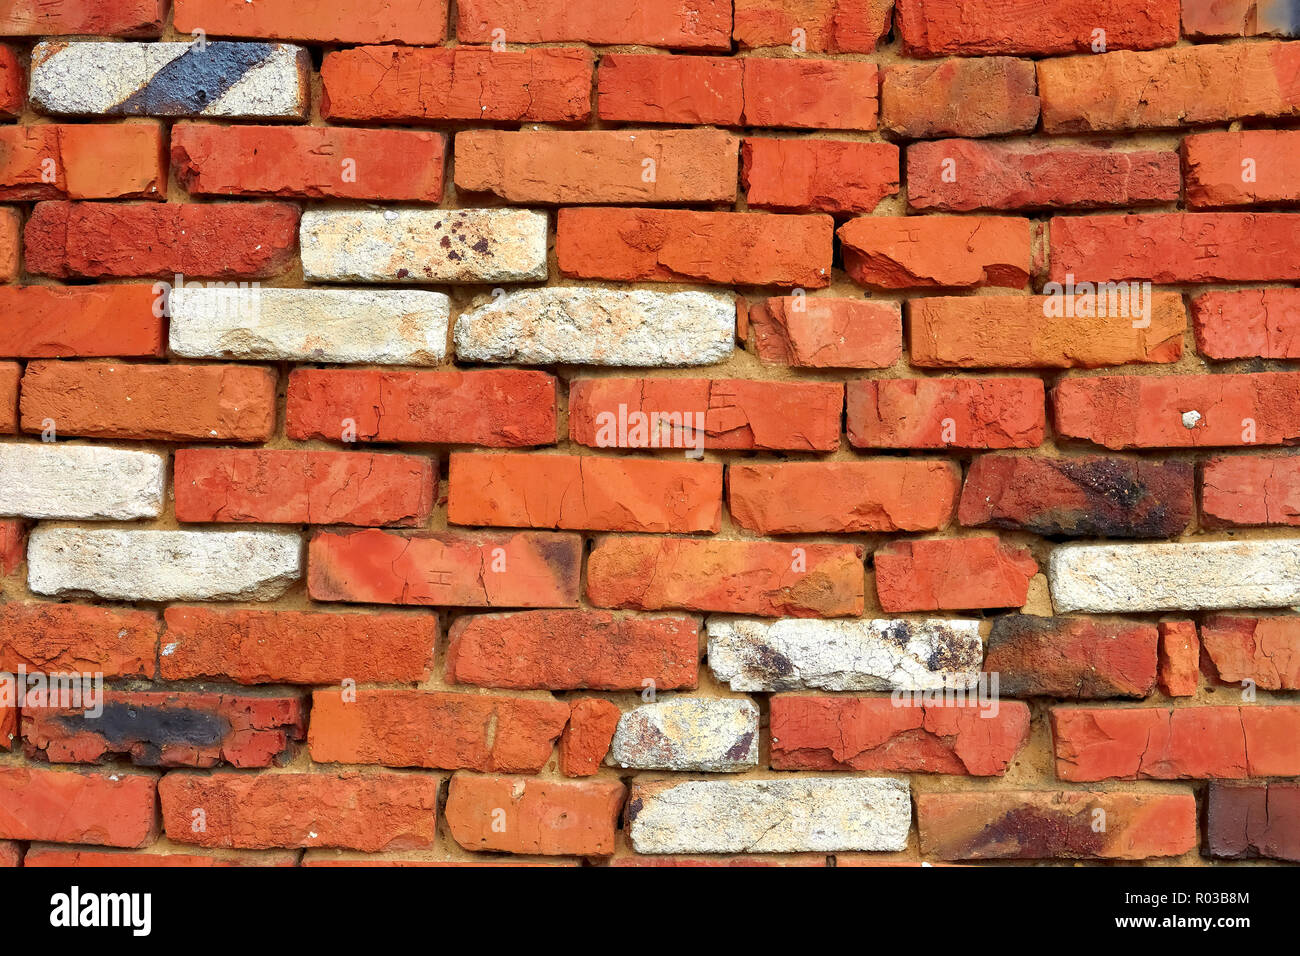 Fragmento de una pared de ladrillo rojo con unos ladrillos refractarios ladrillo de sílice blanca Foto de stock